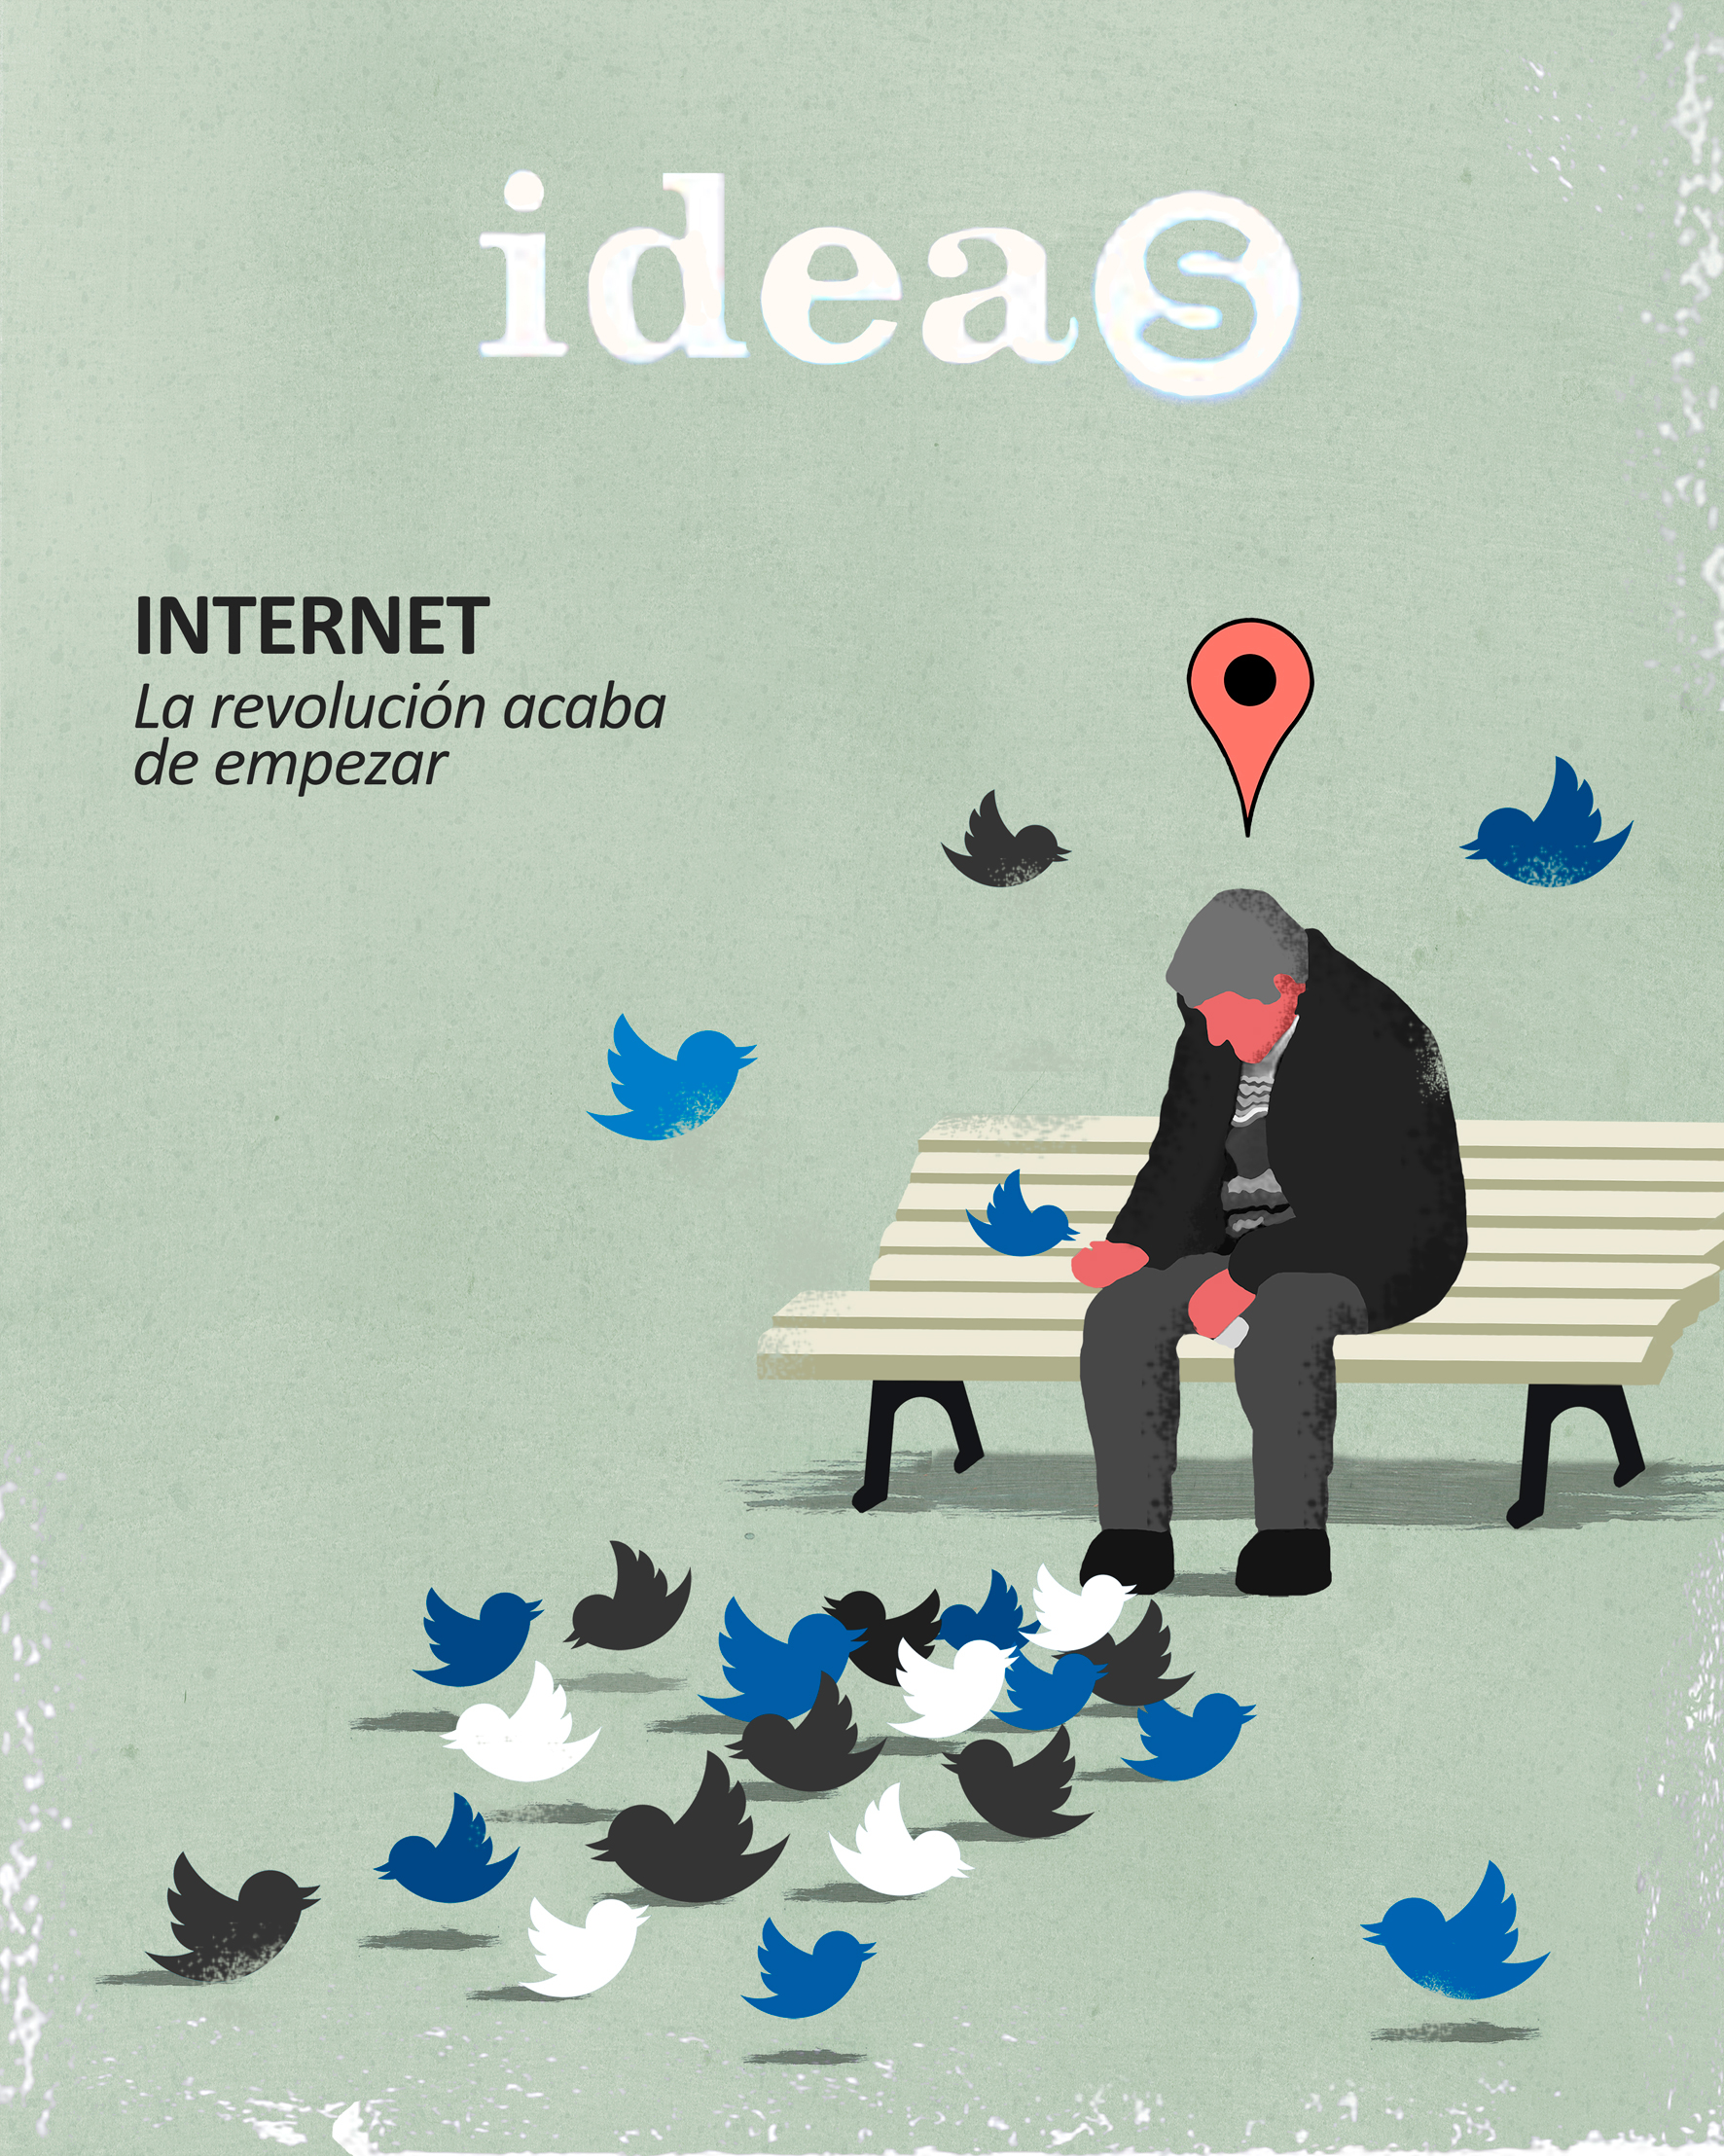 Cover-for-El-Pais-(Ideas)-Internet.jpg